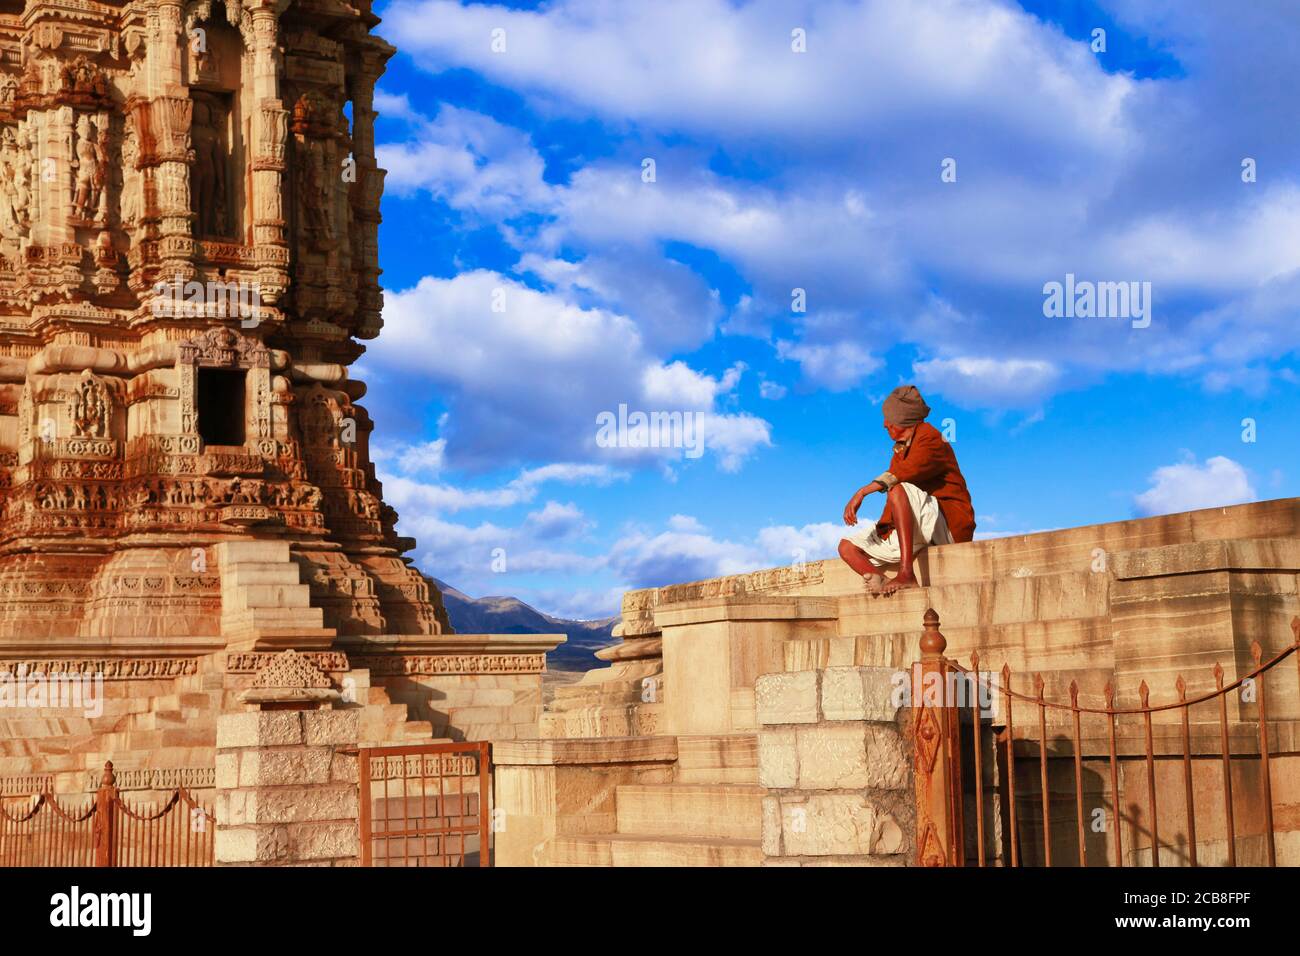 Incredibile India - forte Chittorgarh. Sito patrimonio dell'umanità dell'UNESCO. Famoso alto scolpito torre e vecchio uomo seduta nearby.Cittor città, Rajasthan, febbraio 2013 Foto Stock